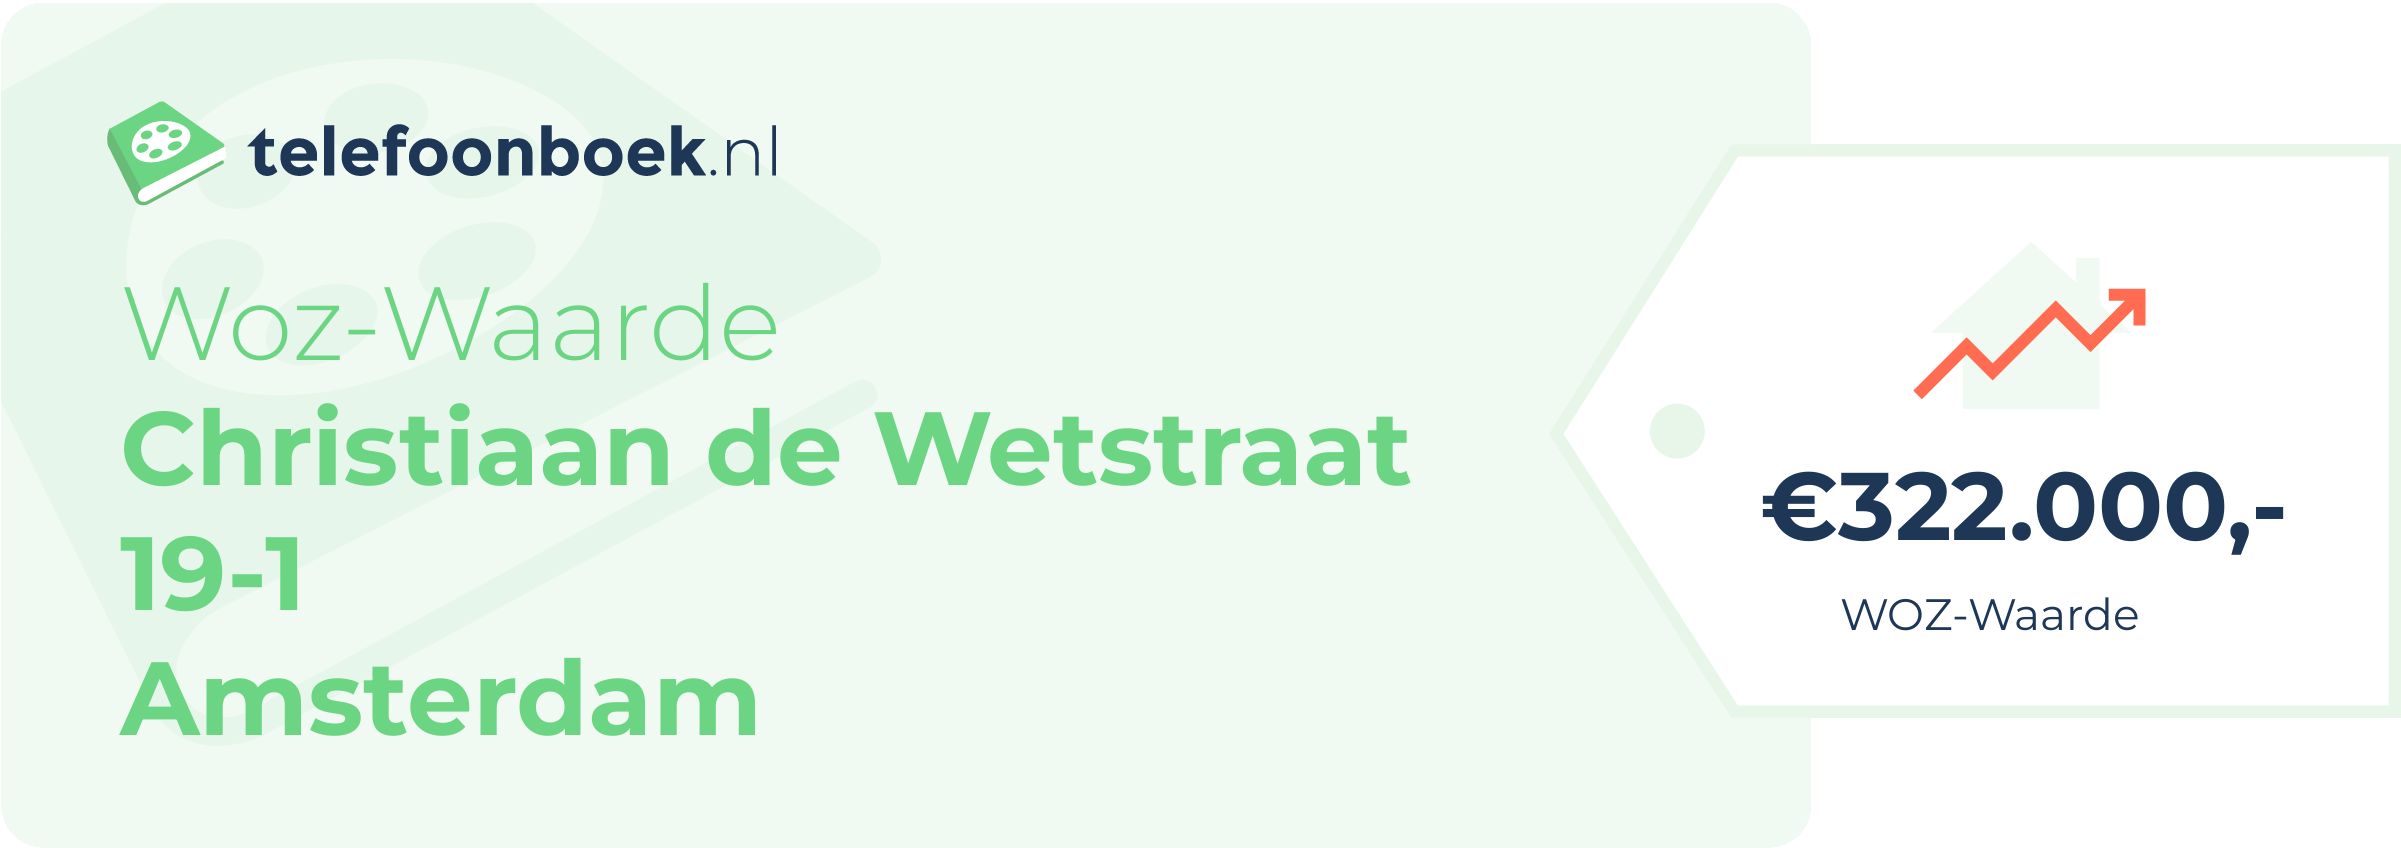 WOZ-waarde Christiaan De Wetstraat 19-1 Amsterdam